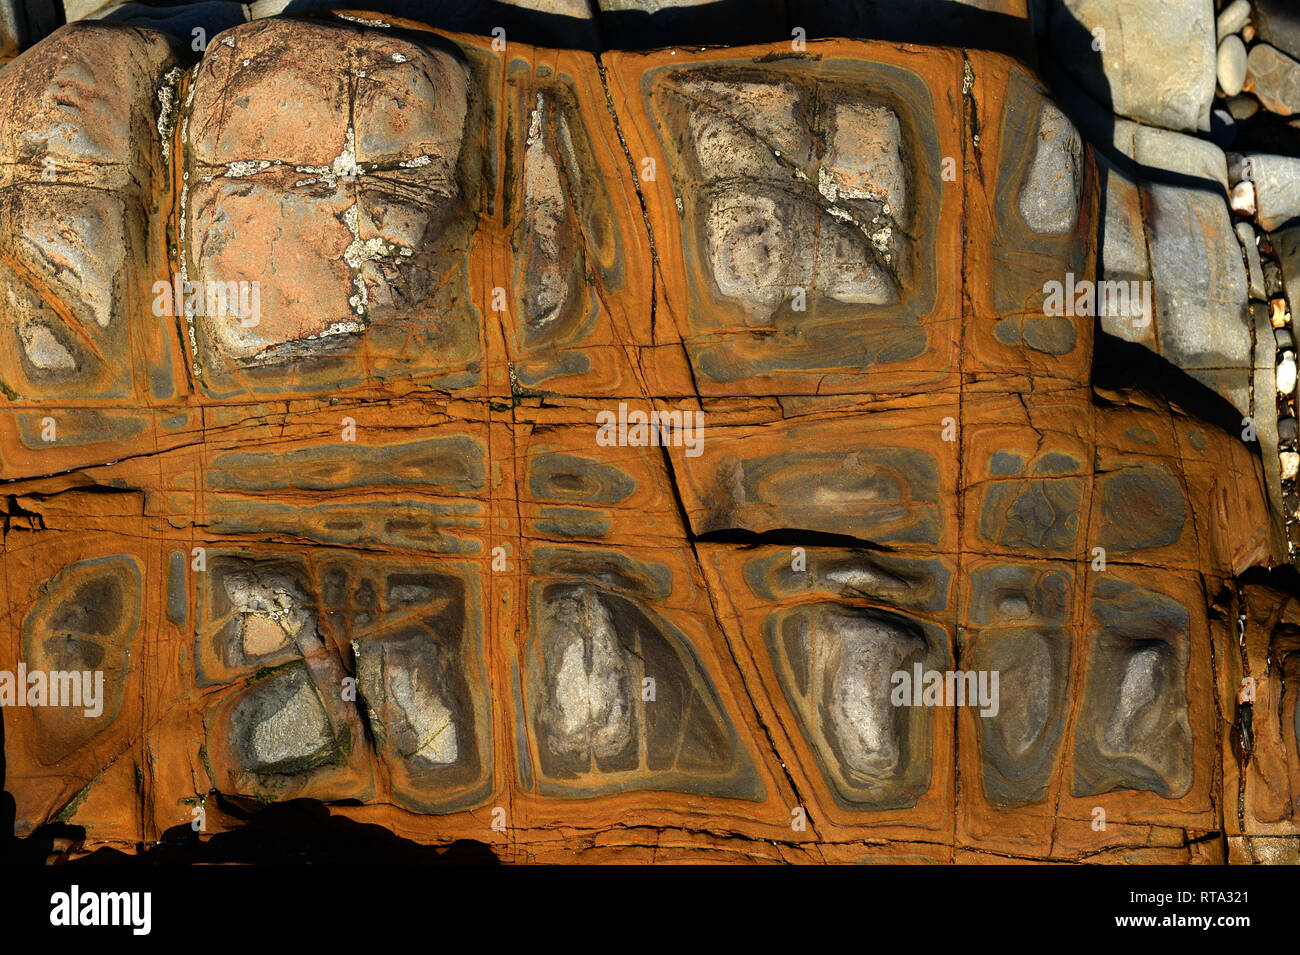 Les non-calcaire marin à l'ouest du pays de Galles Amroth rock formé d'ankérite brun. Infusions dans le plan de litage ont produit une tapisserie de couleur. Banque D'Images